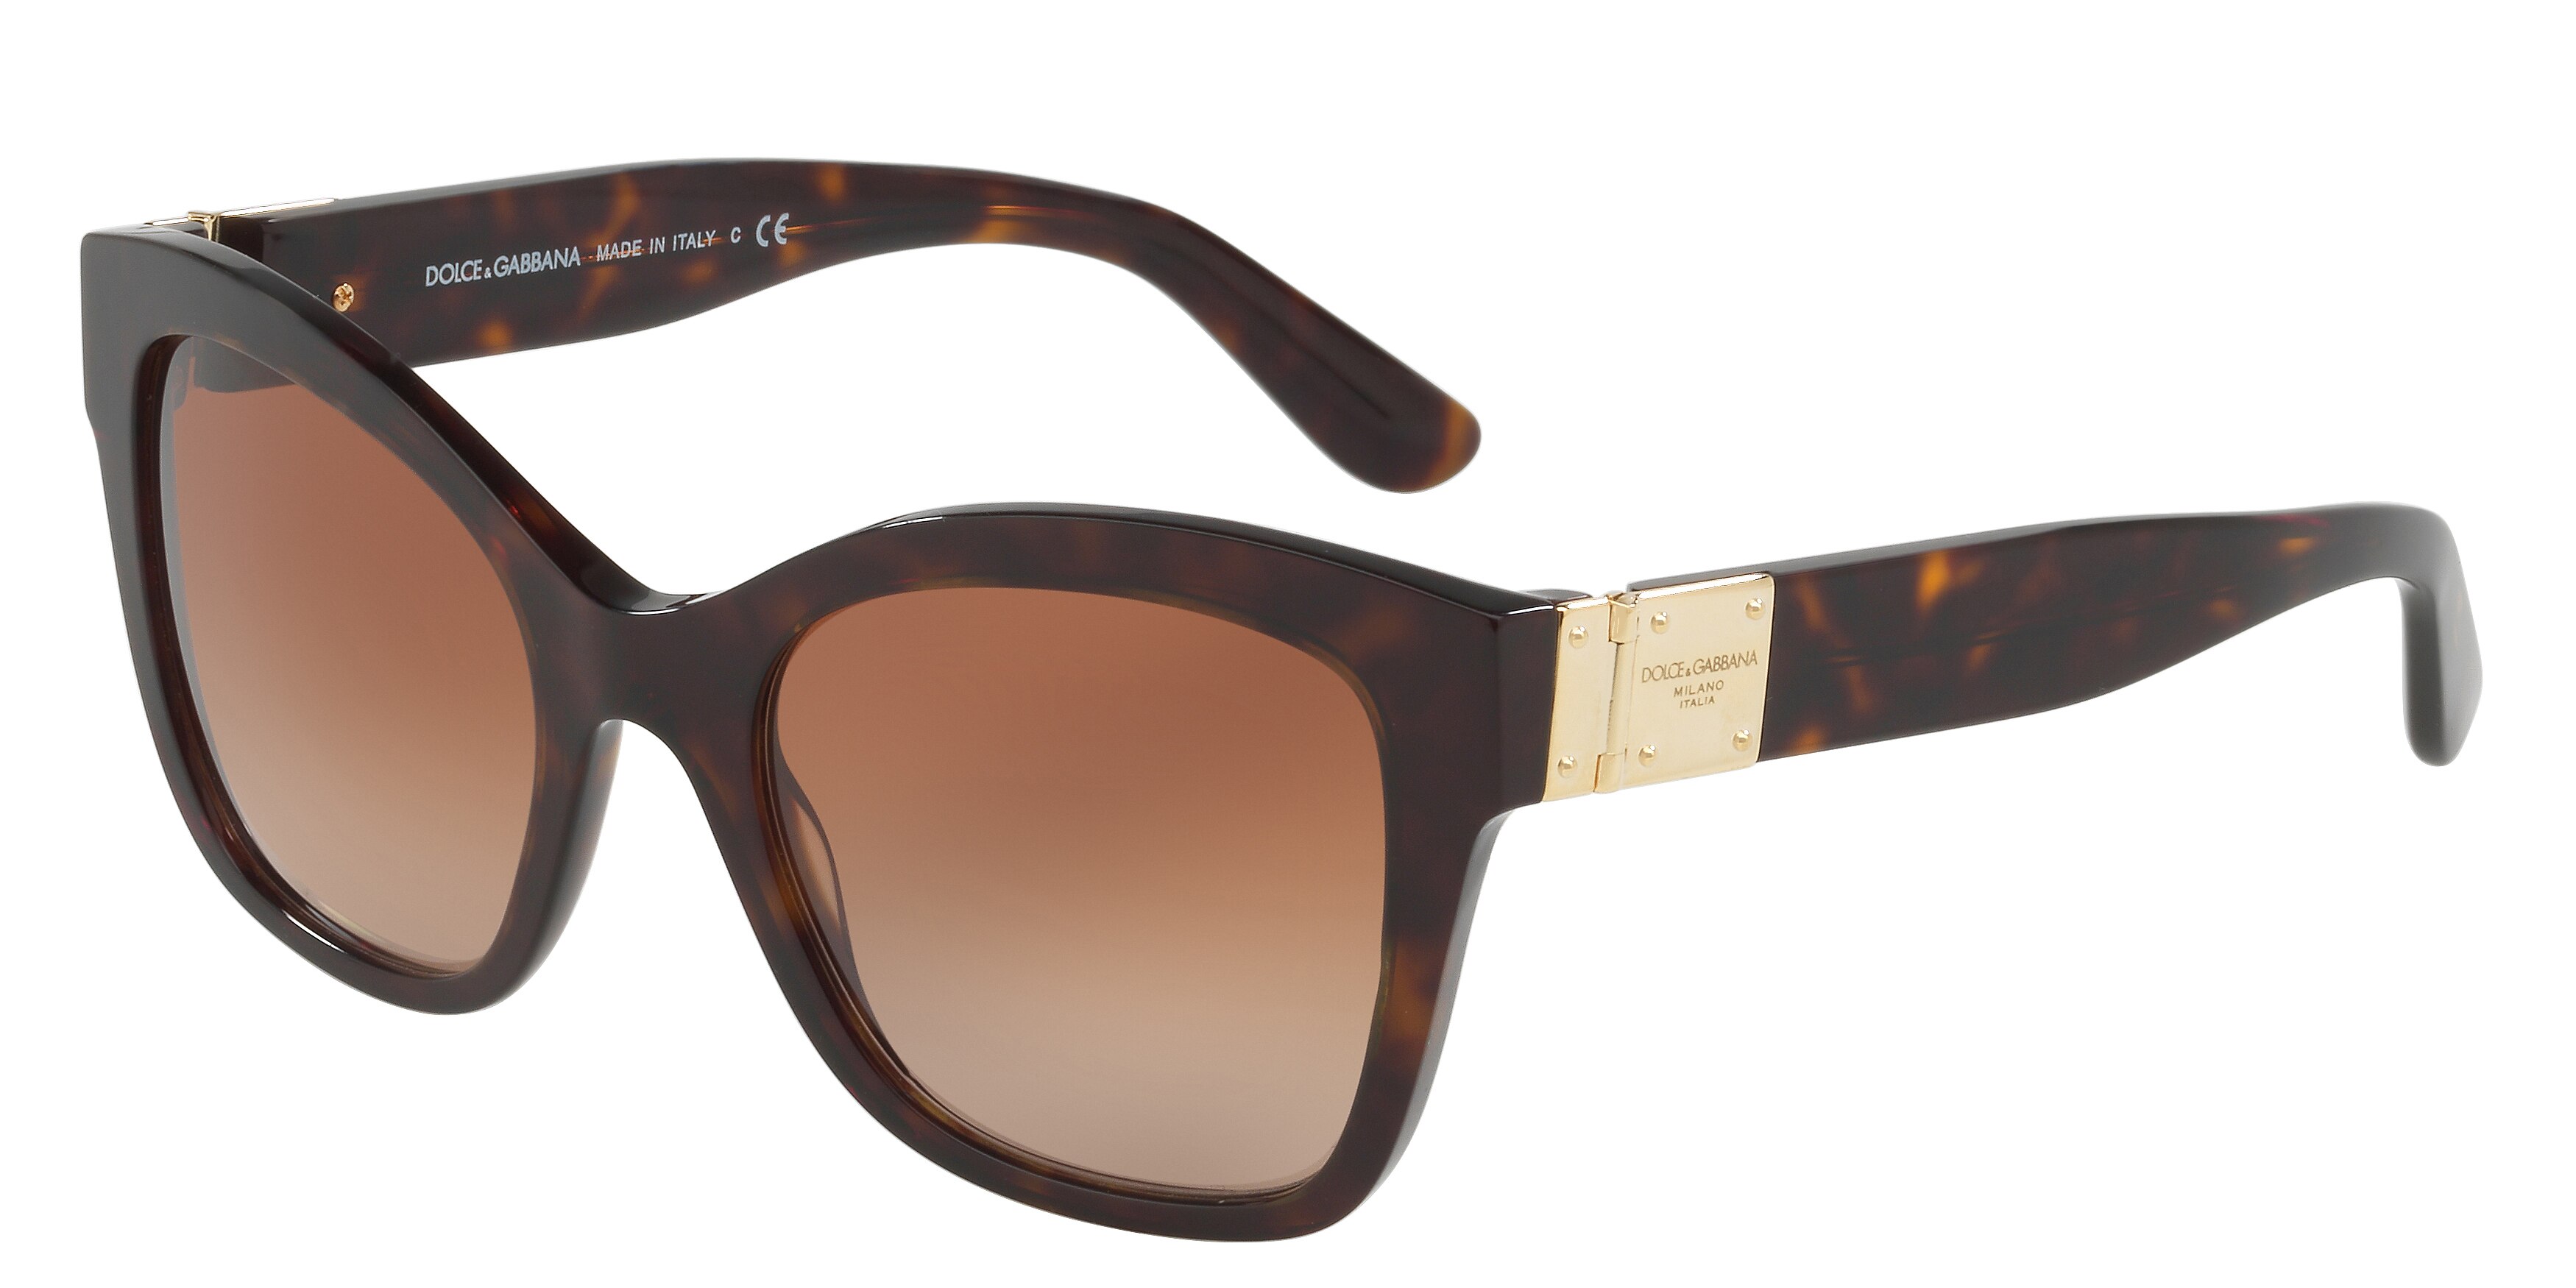 Dolce Gabbana Sunglasses - Luxury Designerware Sunglasses